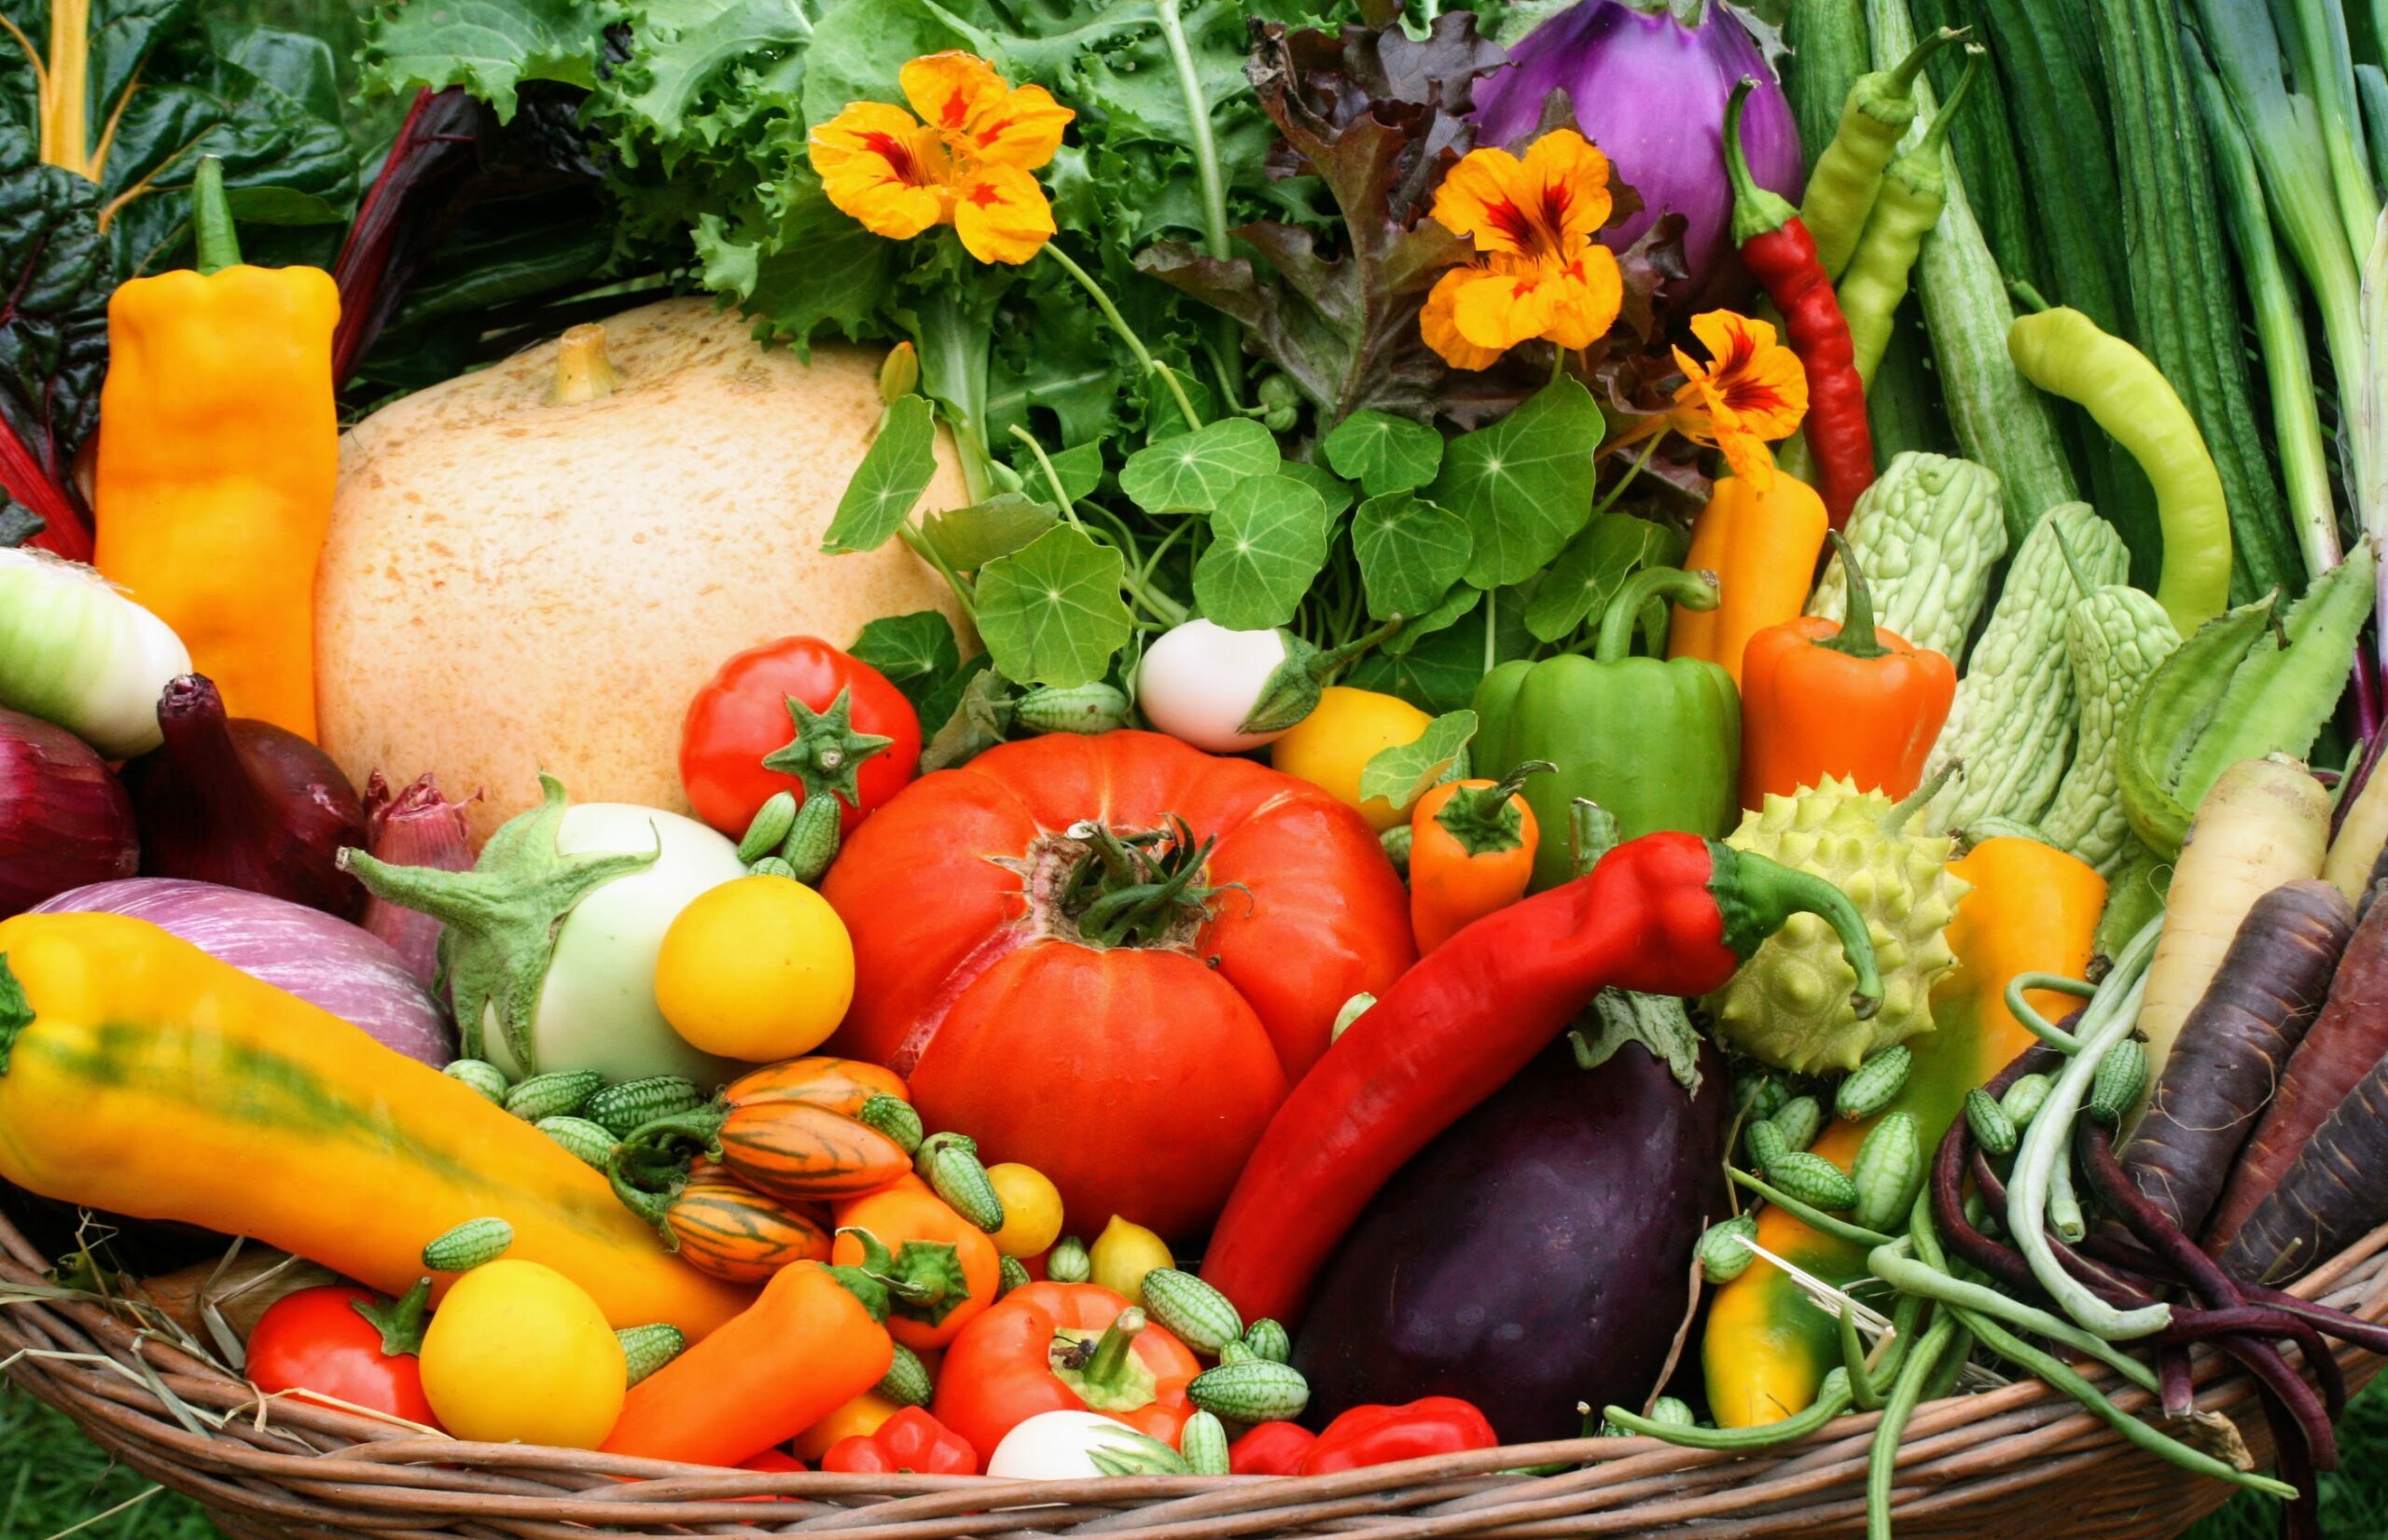 GARTENENTDECKER:INNEN - GEMÜSEGARTEN KUNTERBUNT – Entdecke die Gemüsevielfalt in allen Farben und Formen!